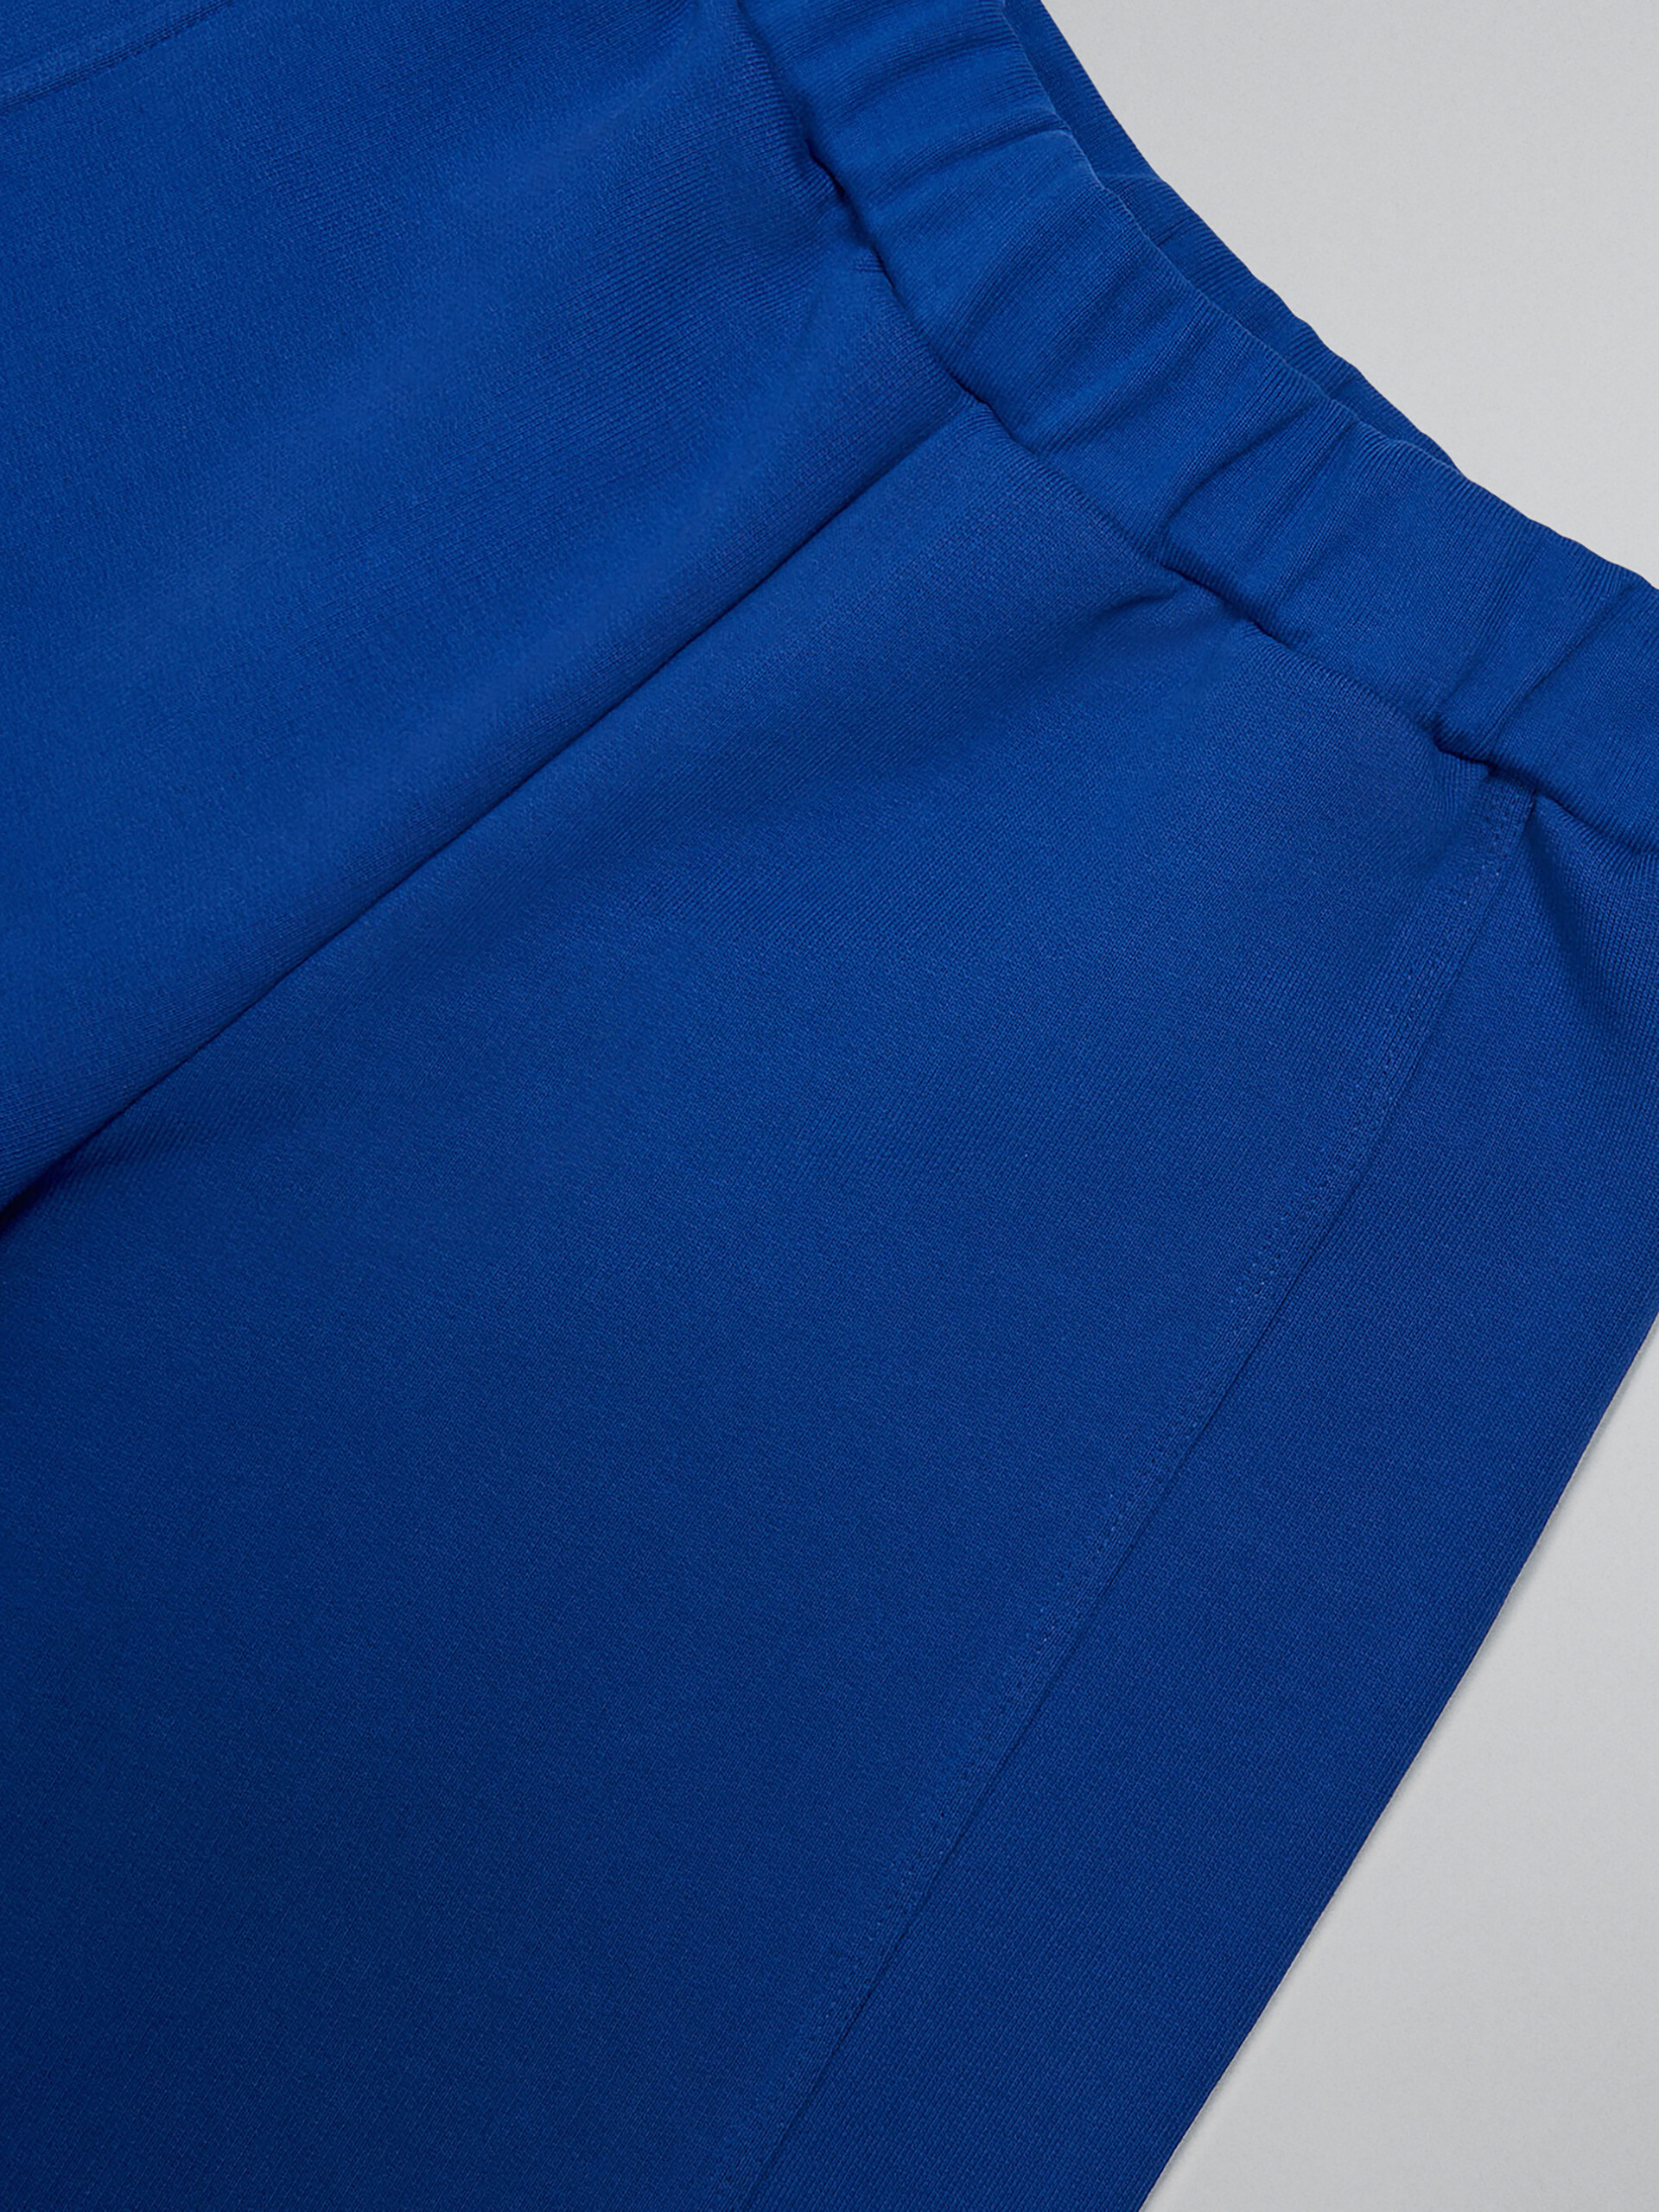 Blue fleece shorts with Brush logo - Pants - Image 4